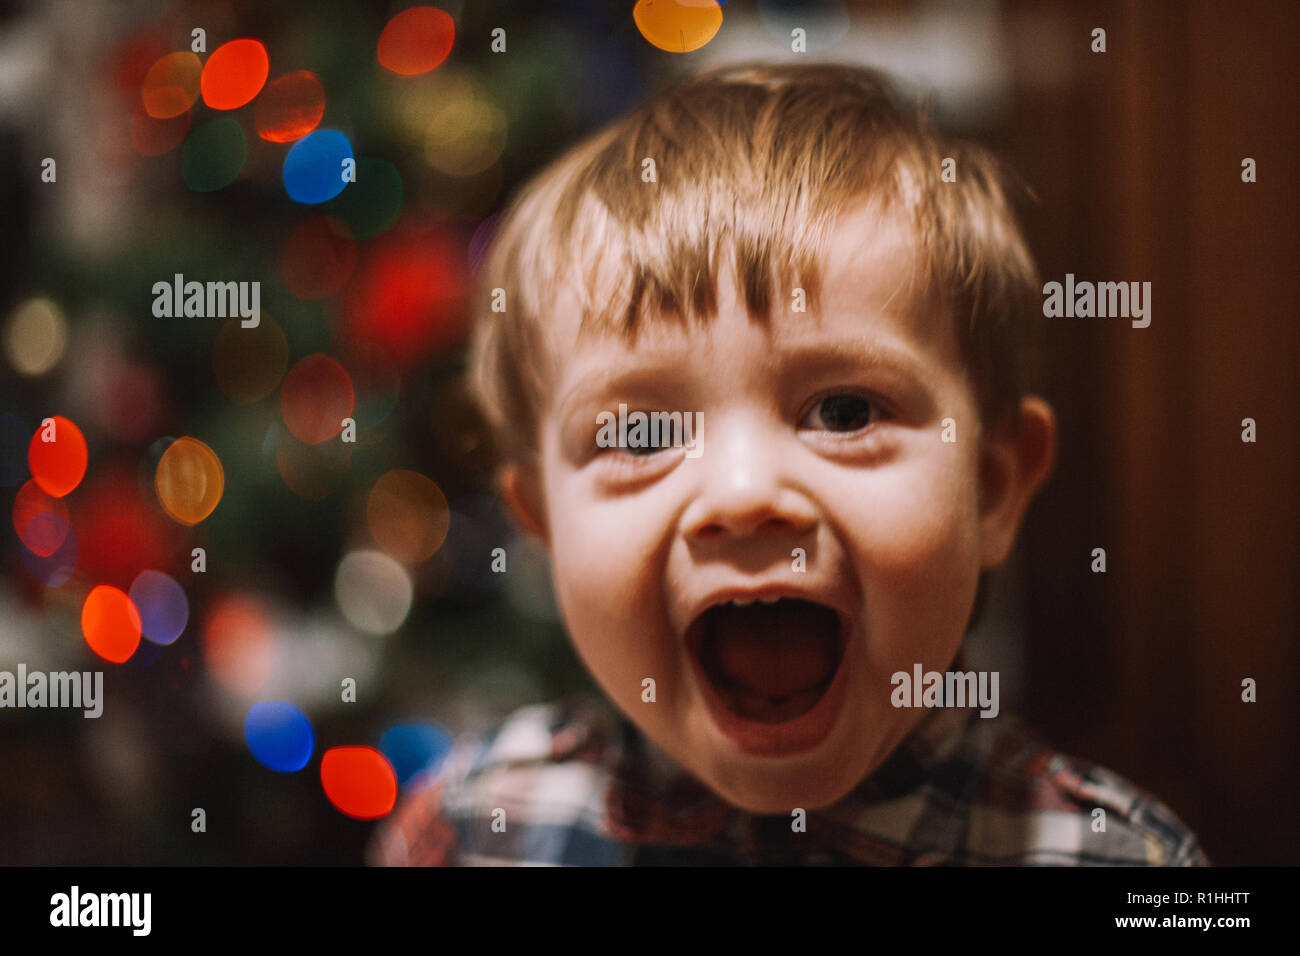 Cheerful baby boy avec bouche ouverte jouant à la maison durant les vacances de Noël Banque D'Images